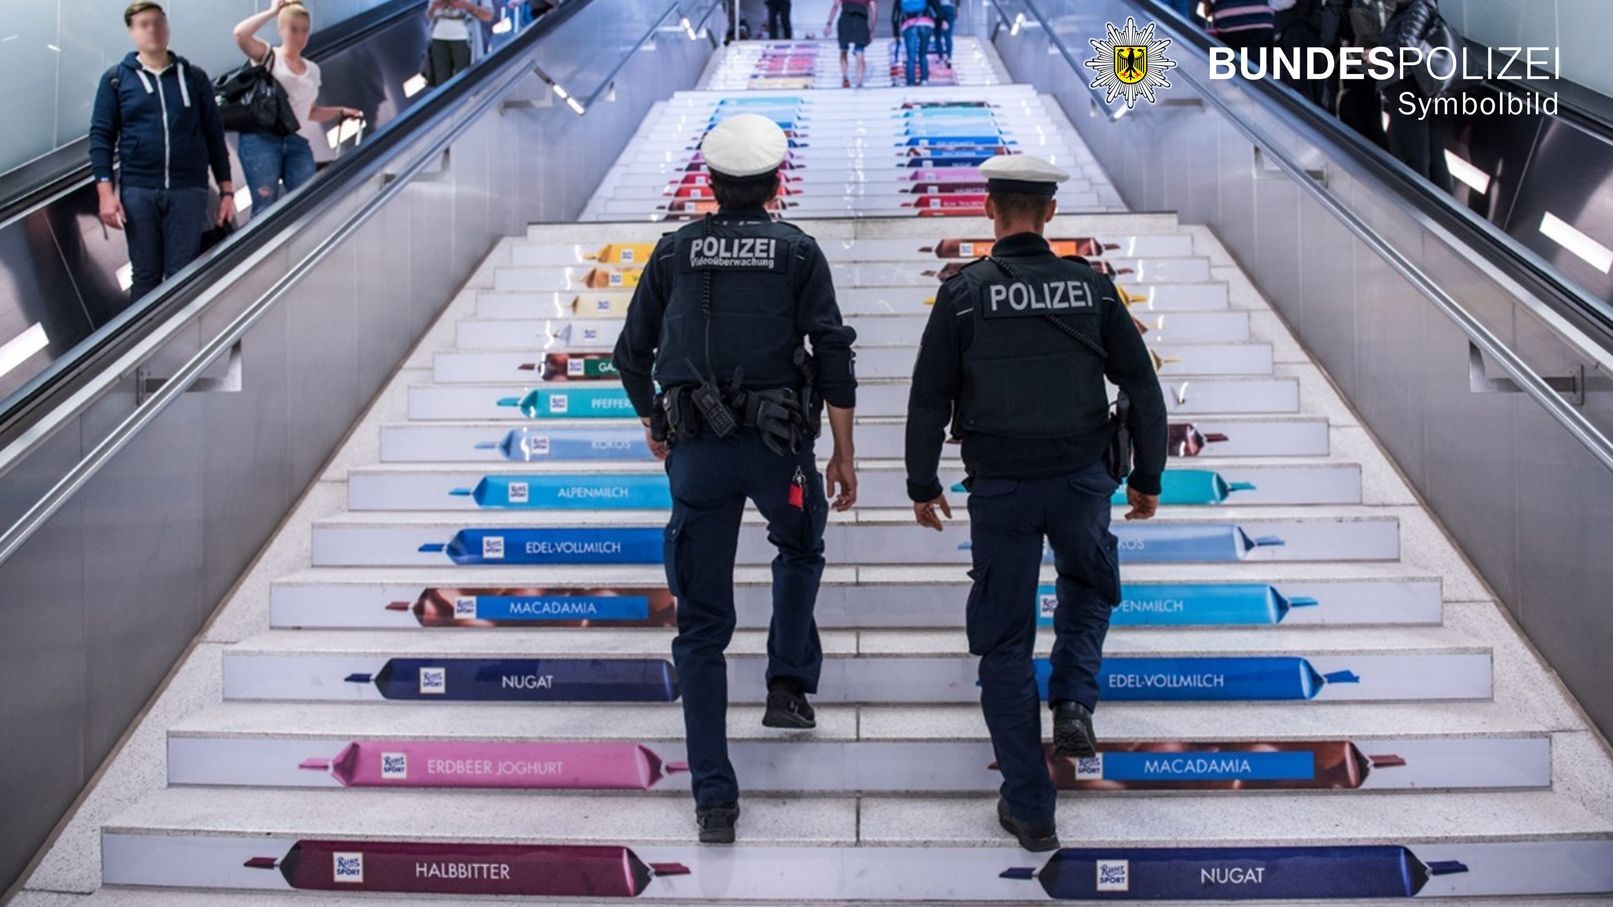 Bundespolizisten gehen Treppe am Bahnhof München hinauf. Foto: Symbolfoto Bundespolizei